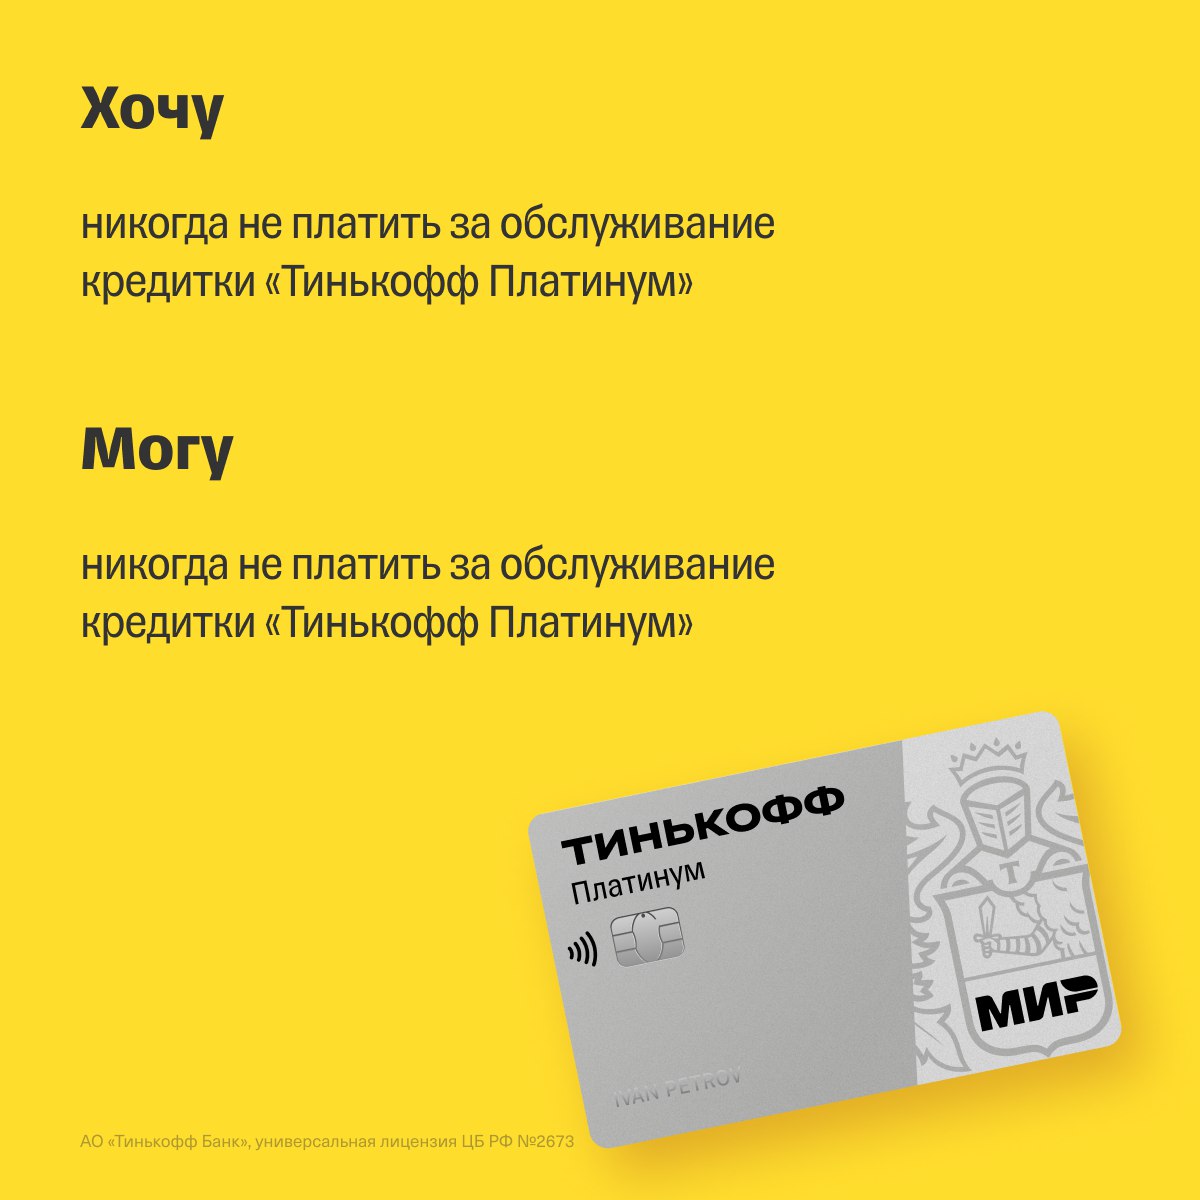 Суть кредитной карты тинькофф платинум. Тинькофф платинум вместо бонусов рубли.